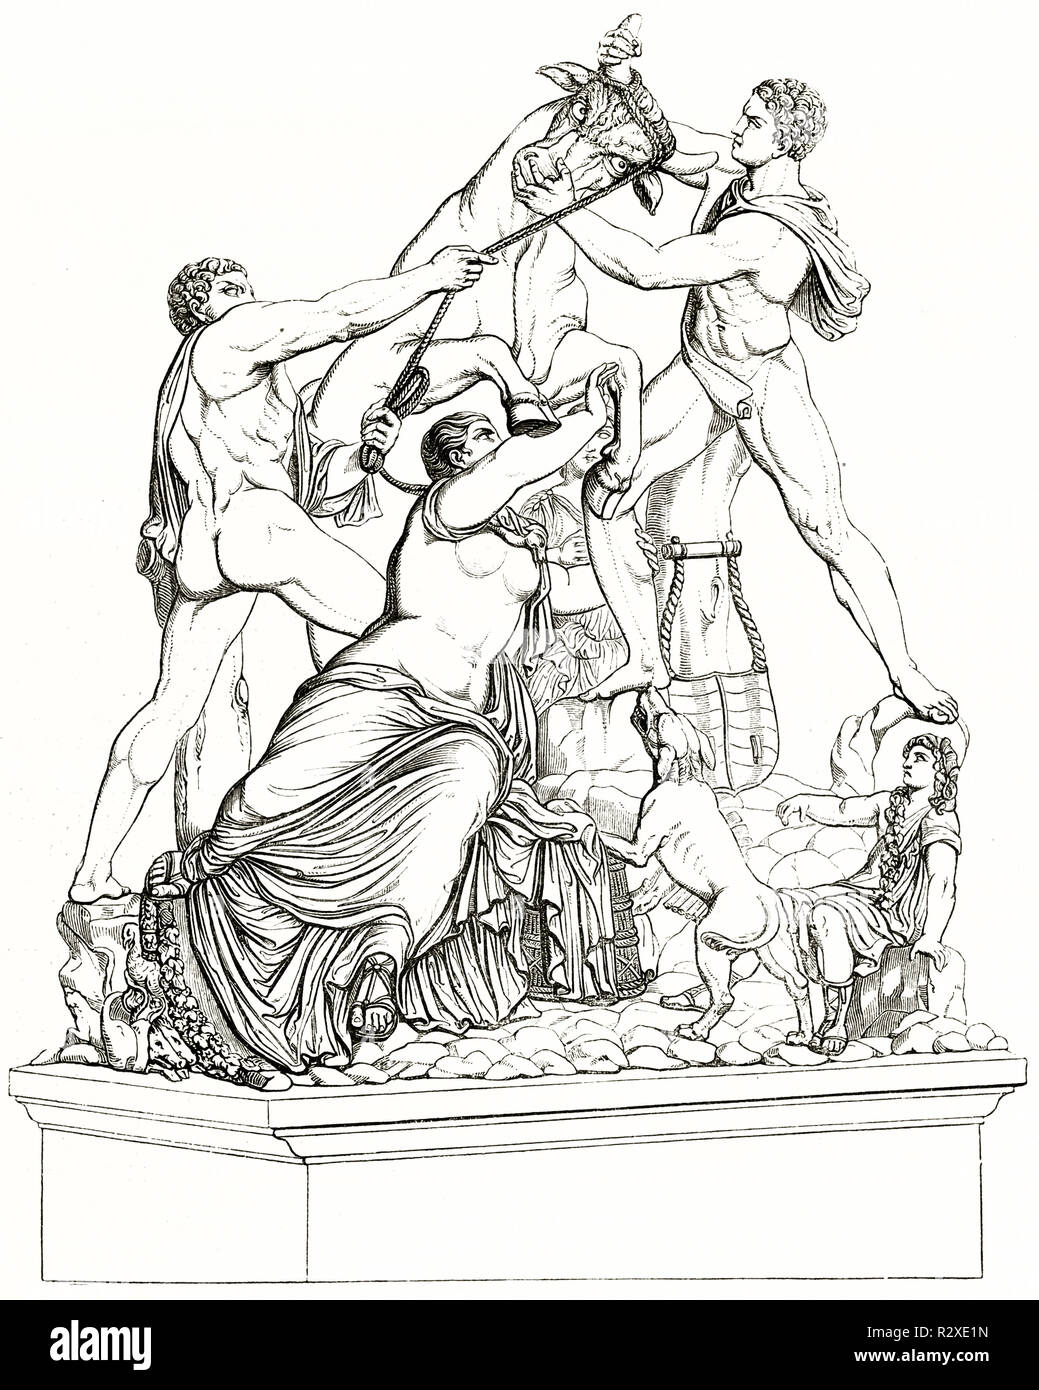 Alten Vervielfältigung der Toro Farnese Farnese (Stier) im Nationalen Archäologischen Museum, Neapel, Italien. Publ. Auf Magasin Pittoresque, Paris, 1846 Stockfoto